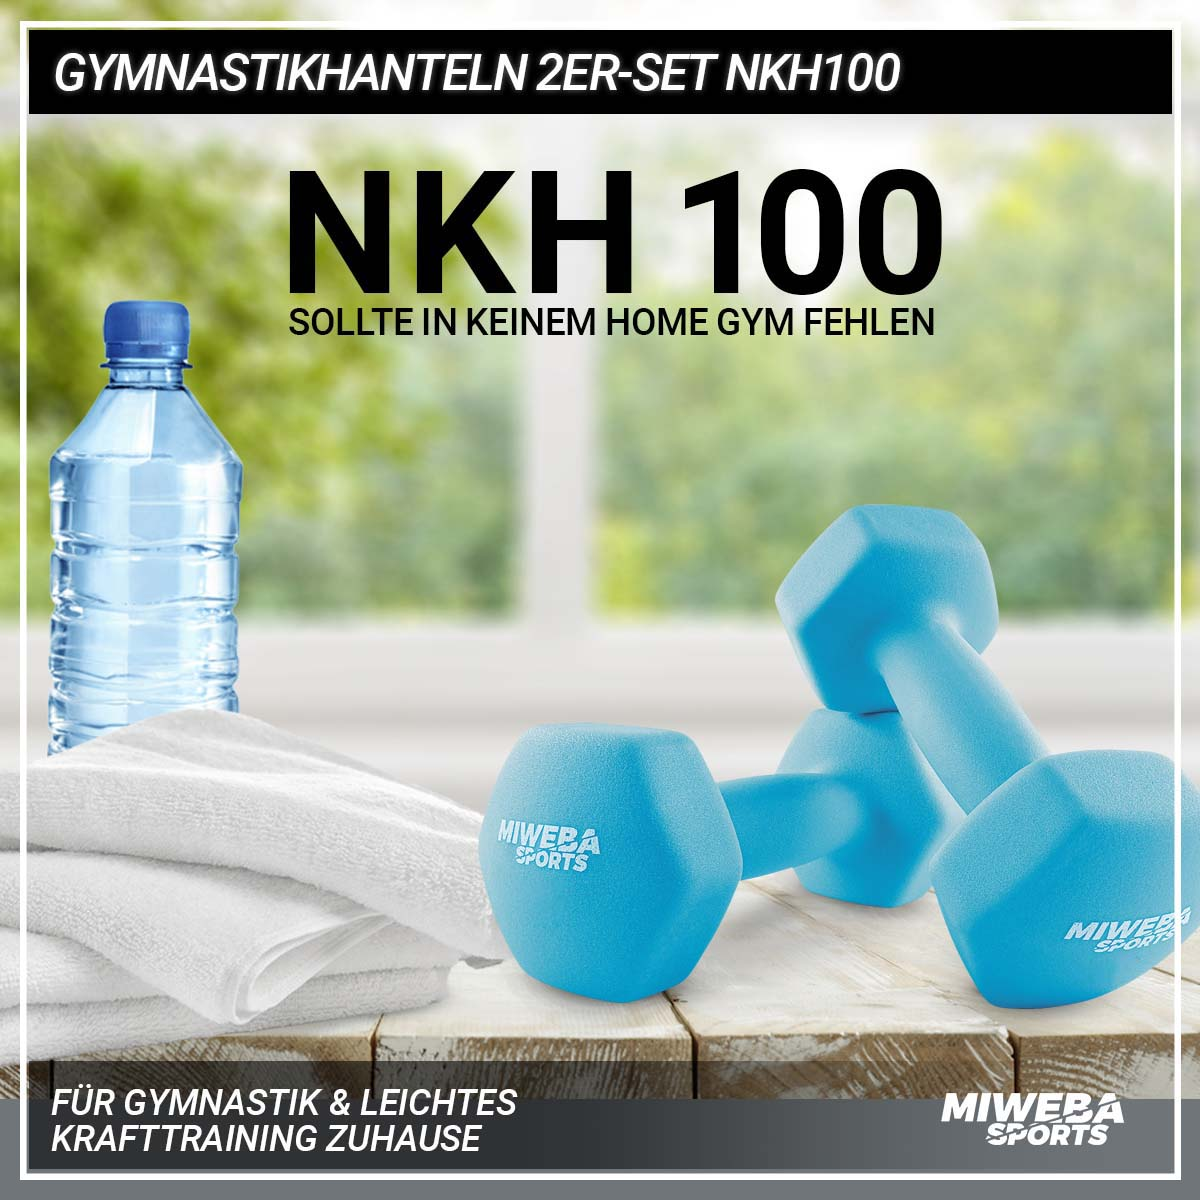 MIWEBA SPORTS Gymnastikhanteln 2er NKH100 Türkis Set Kurzhantel